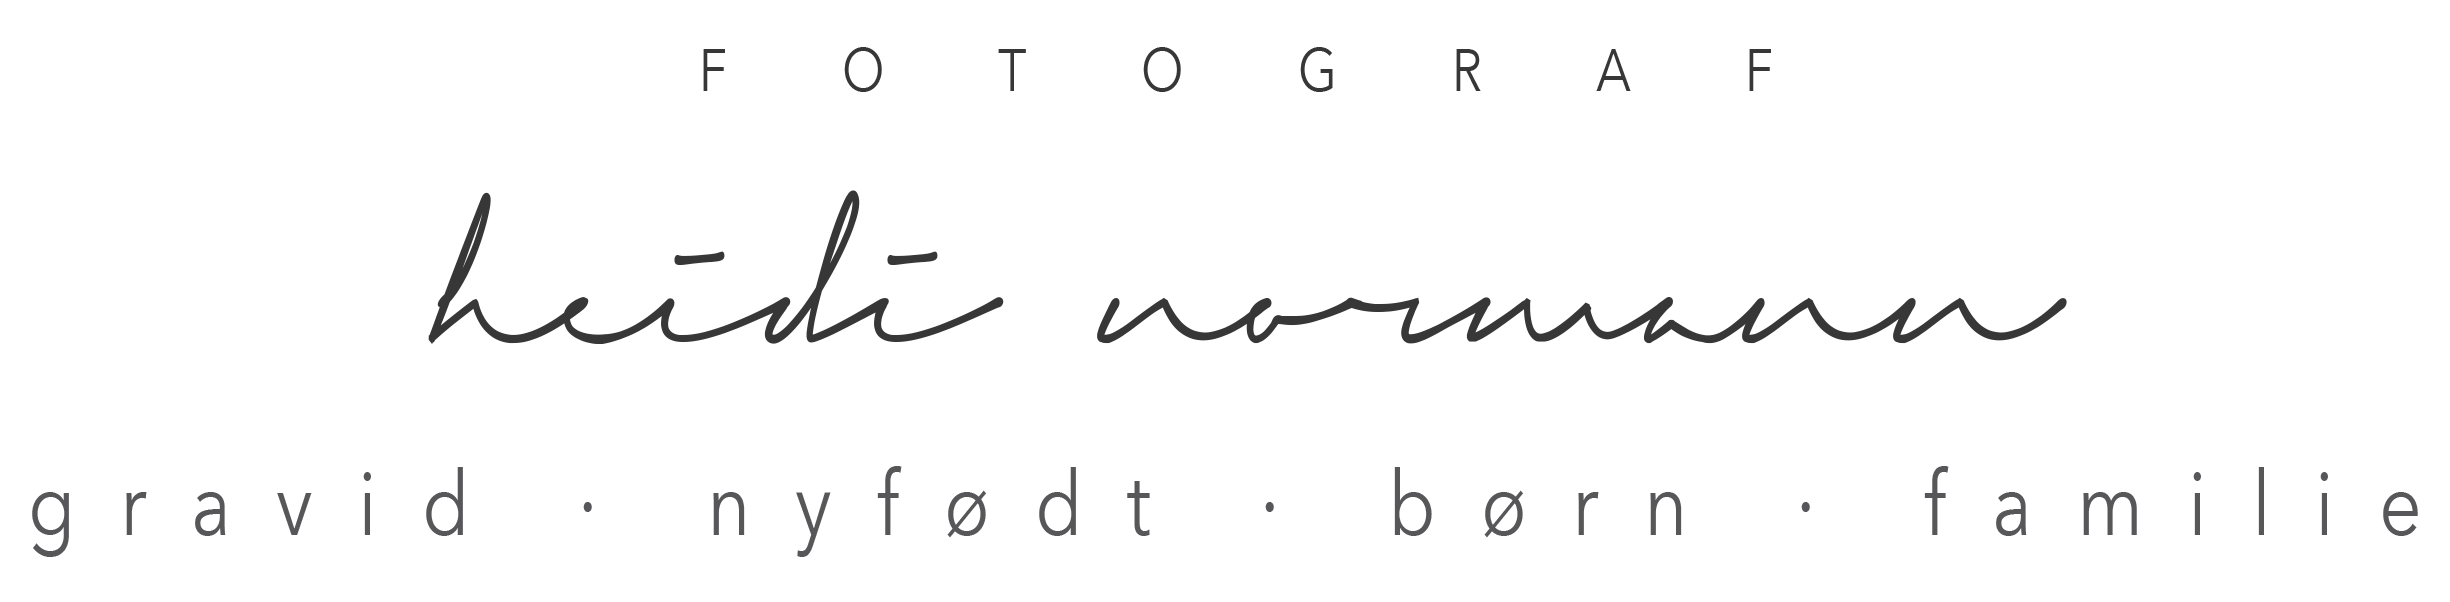 Fotograf heidi normann logo